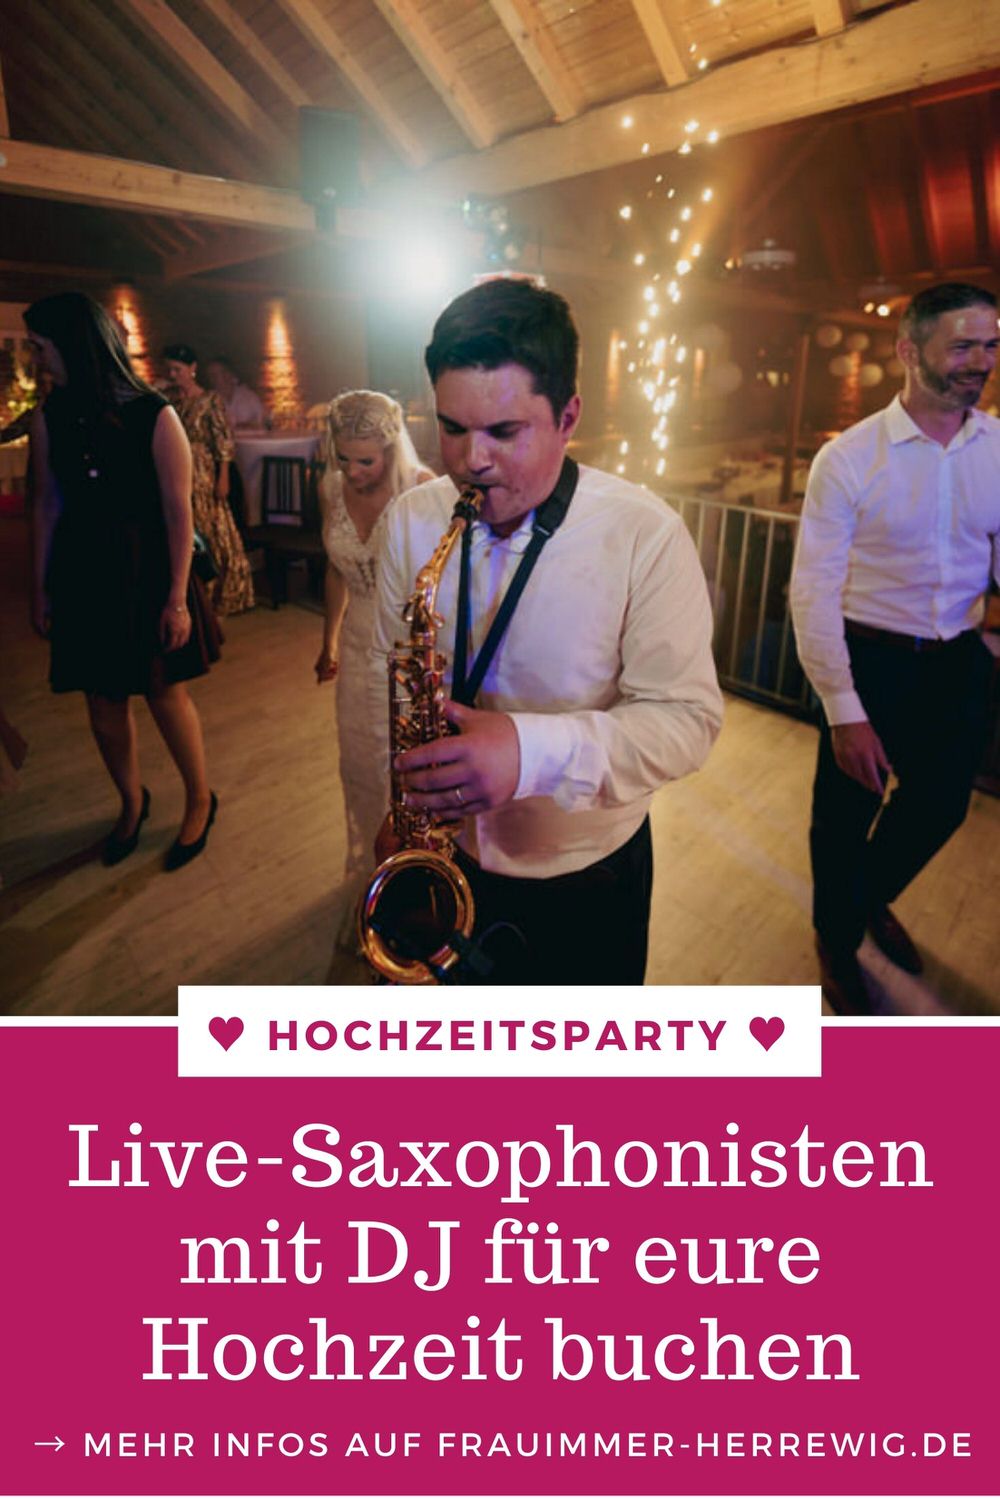 Hochzeit saxophonisten buchen – gesehen bei frauimmer-herrewig.de